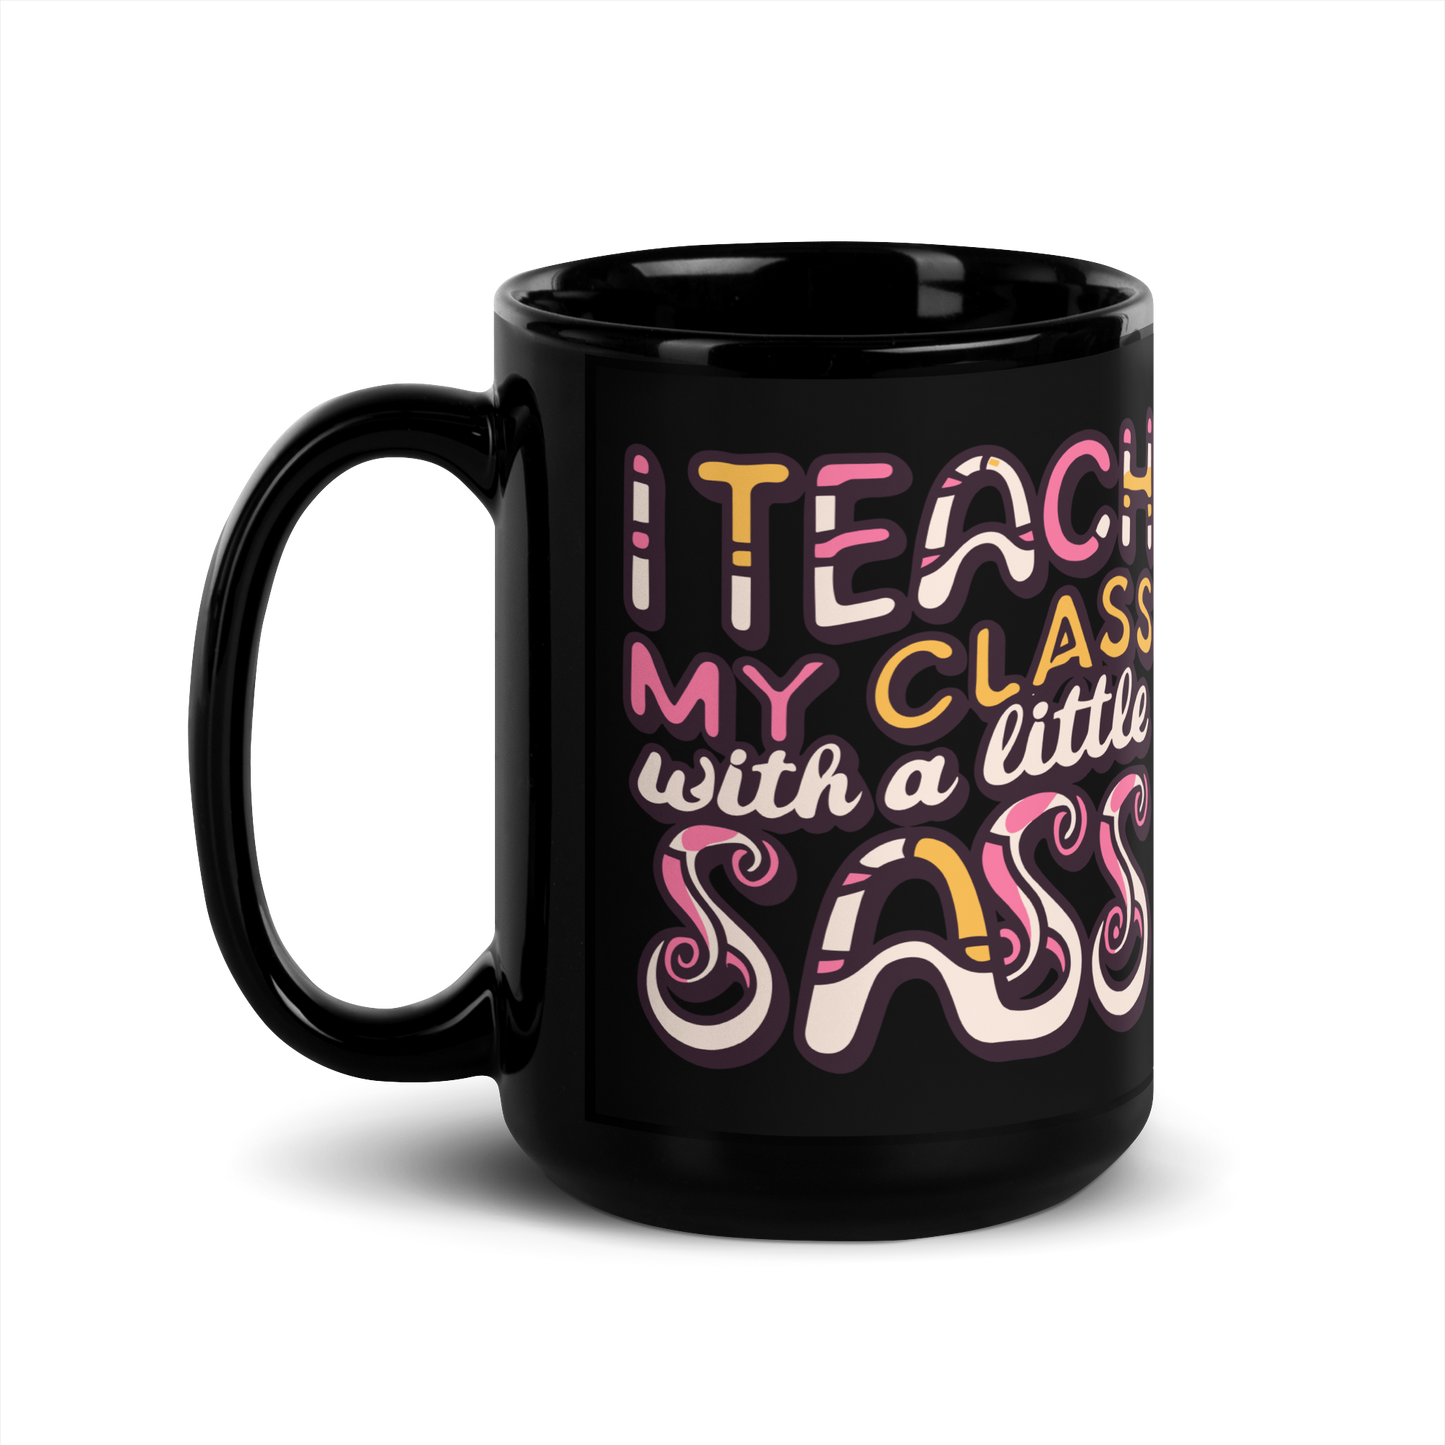 Teacher Coffee Mug- "I Teach My Class With a Little Sass"